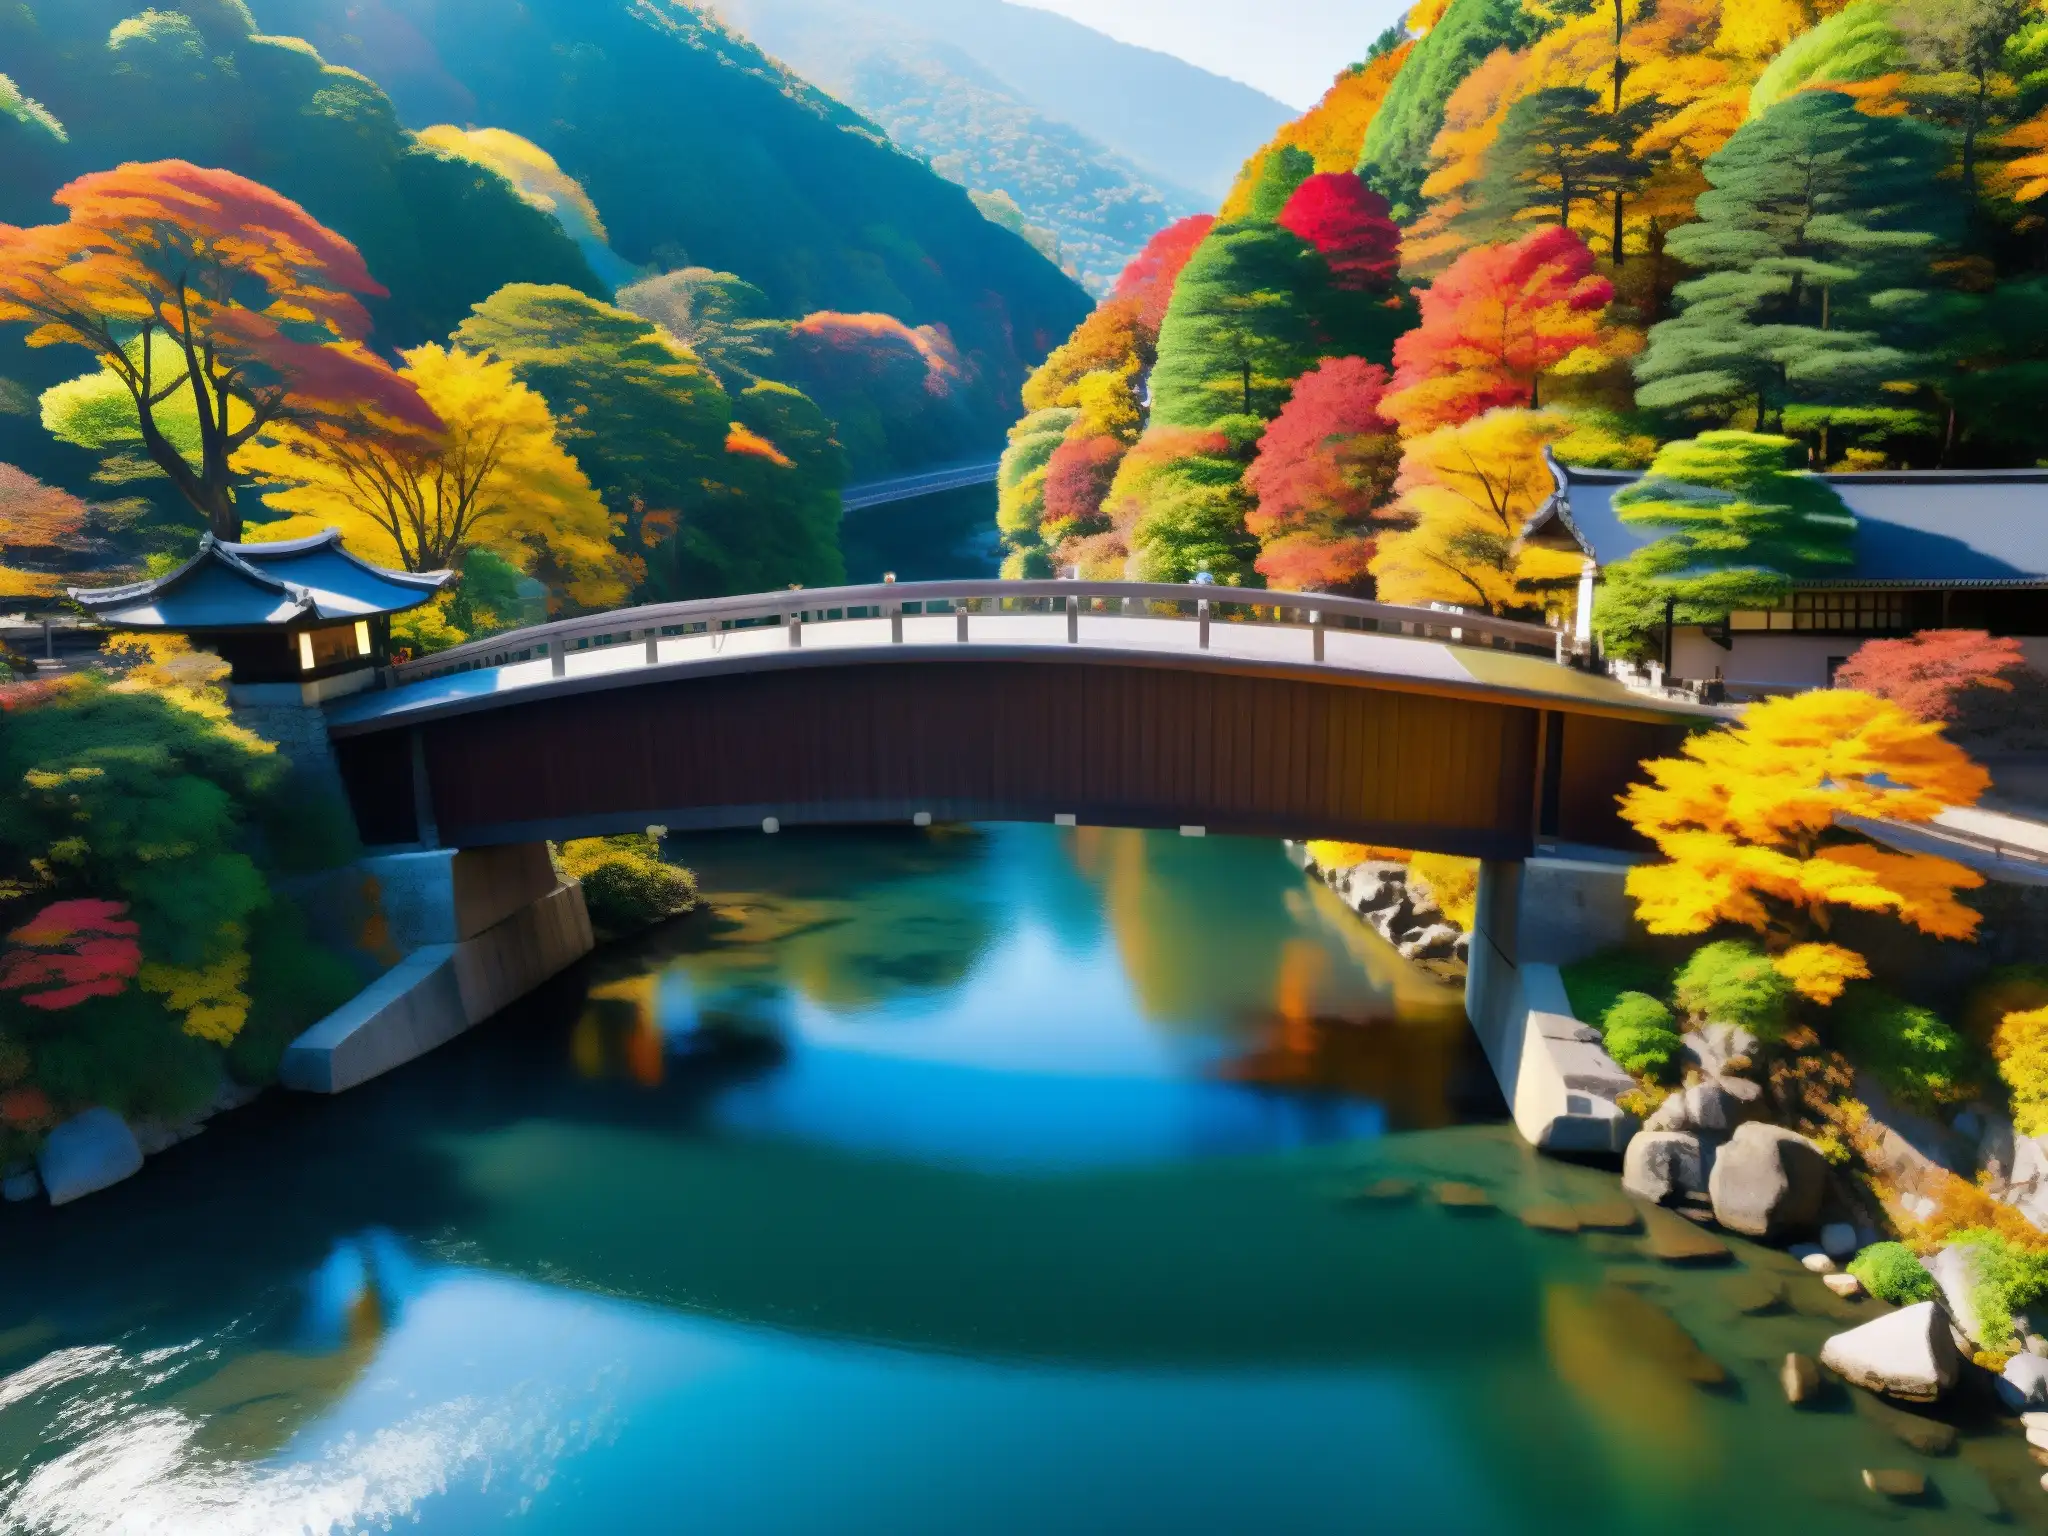 Majestuoso puente Saruhashi envuelto en vibrante follaje otoñal, con aguas cristalinas y luz filtrándose entre las hojas